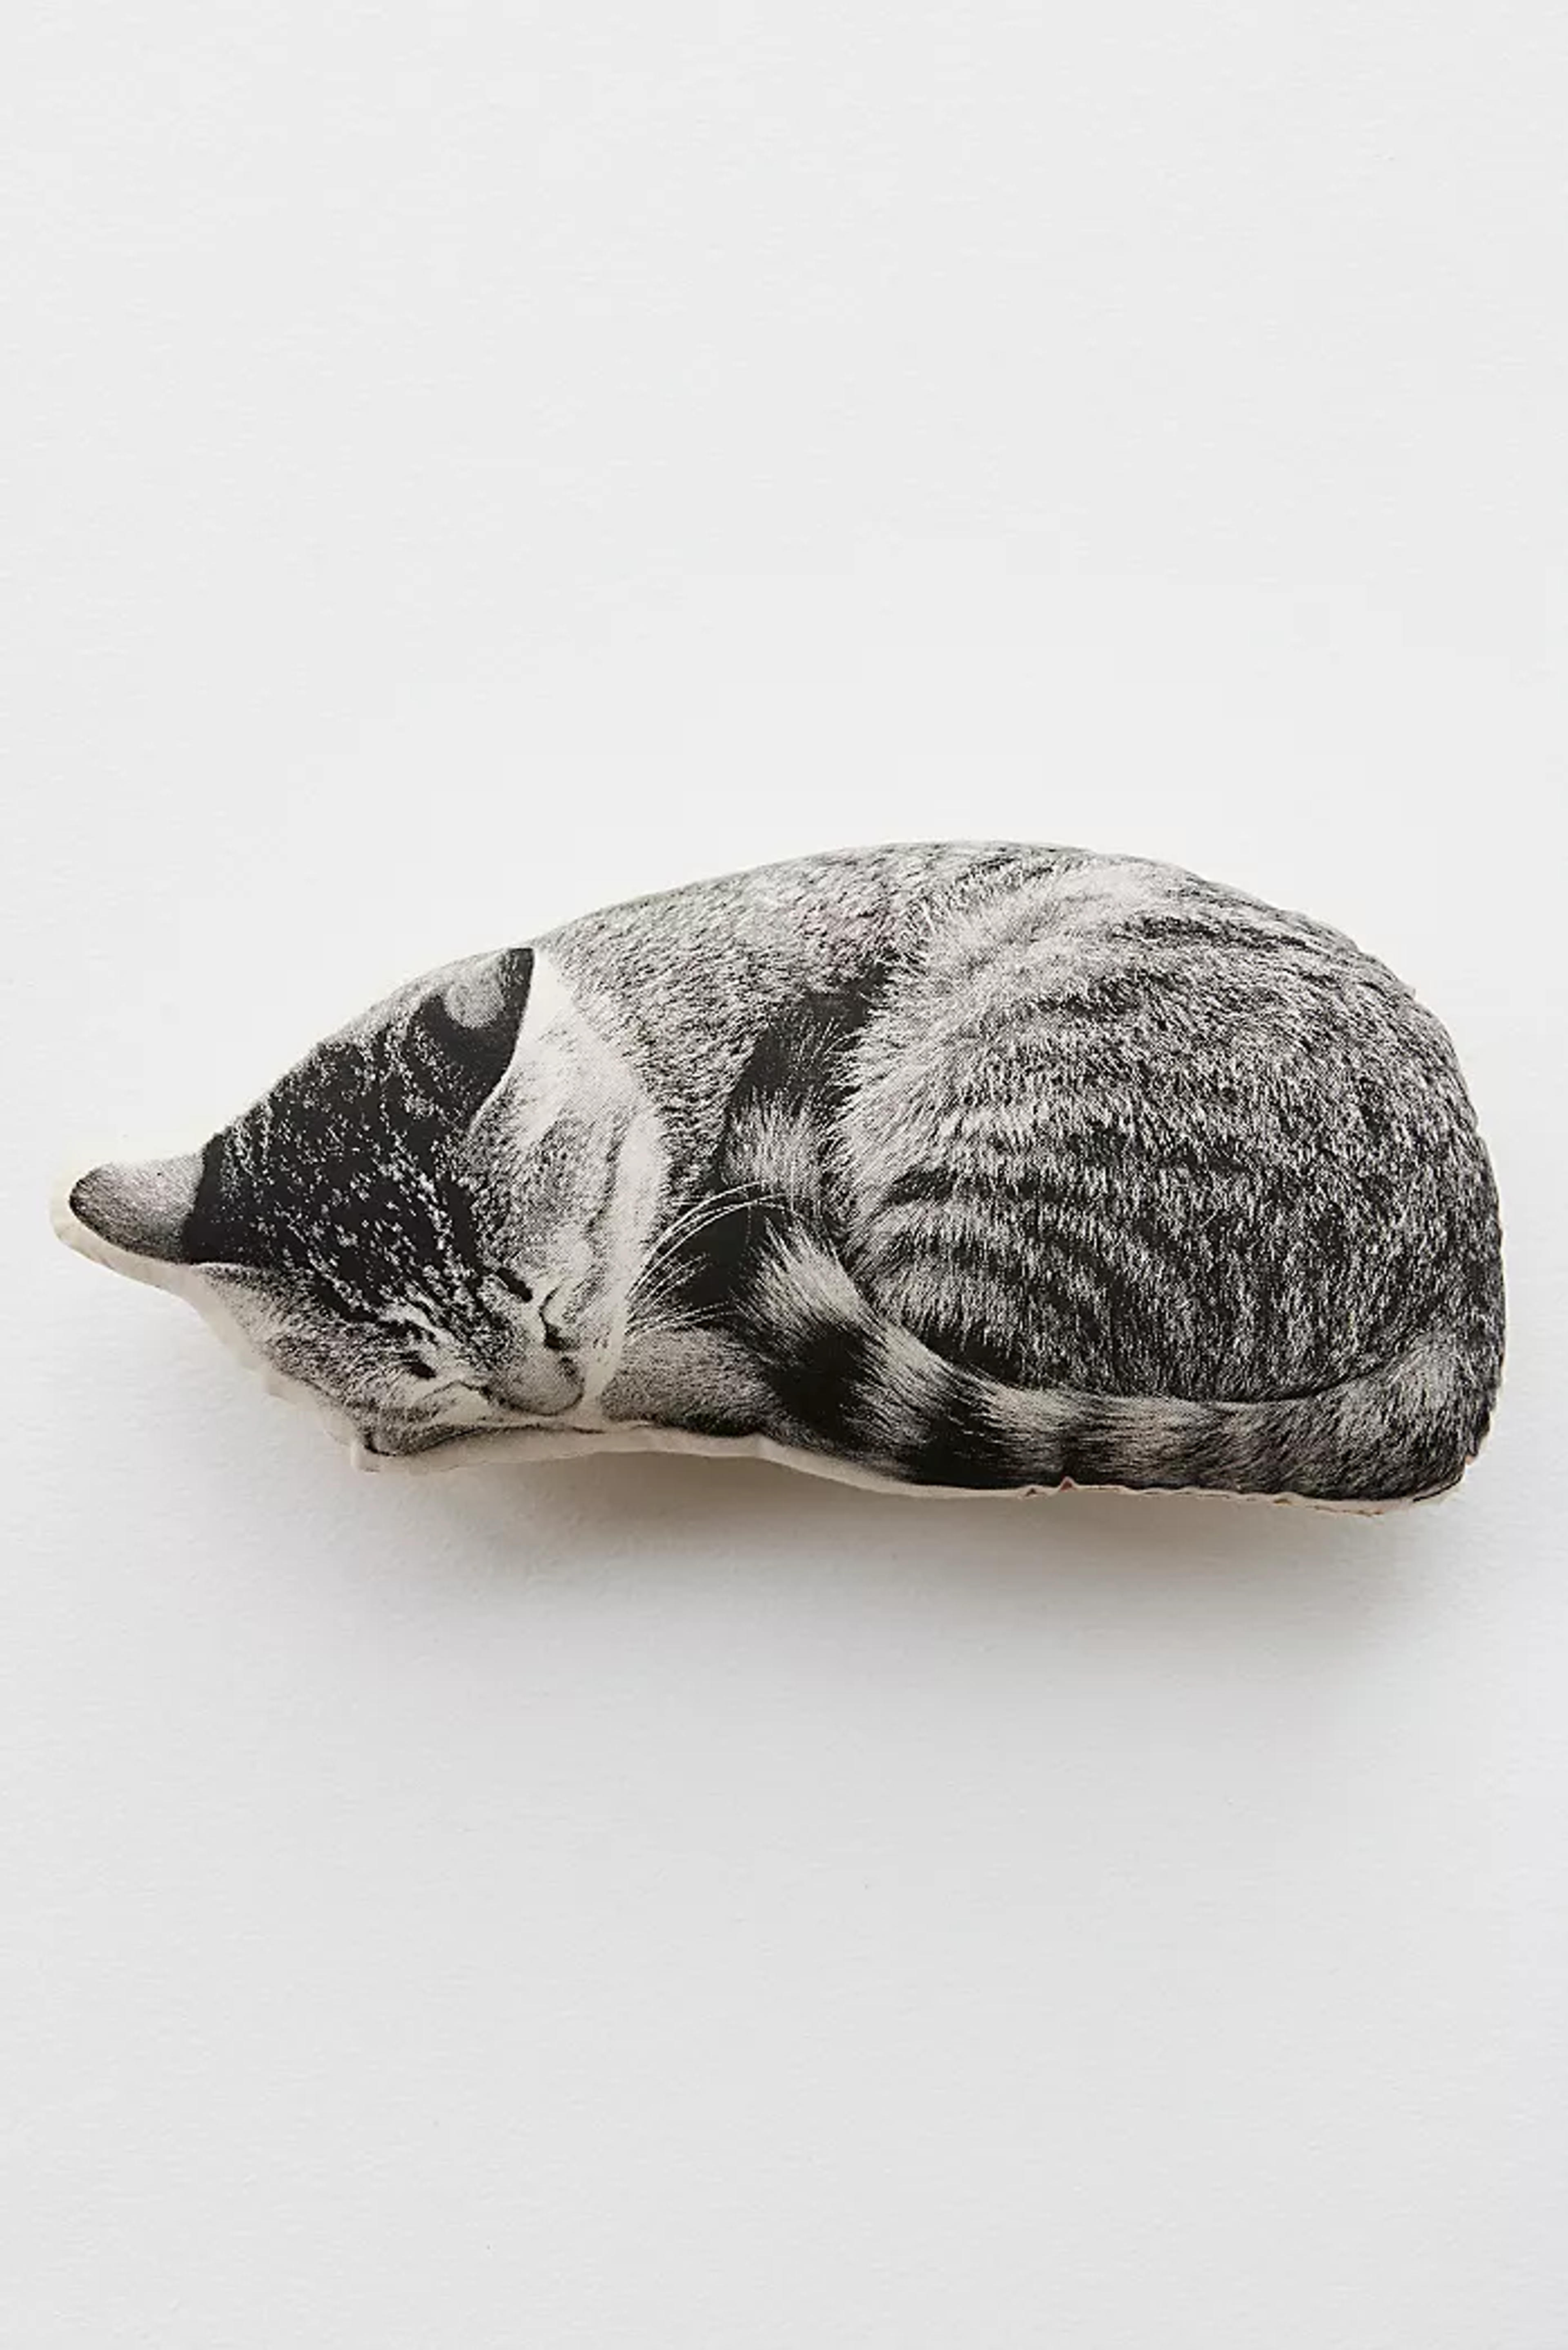 Silkscreen Sleeping Cat Pillow | Free People